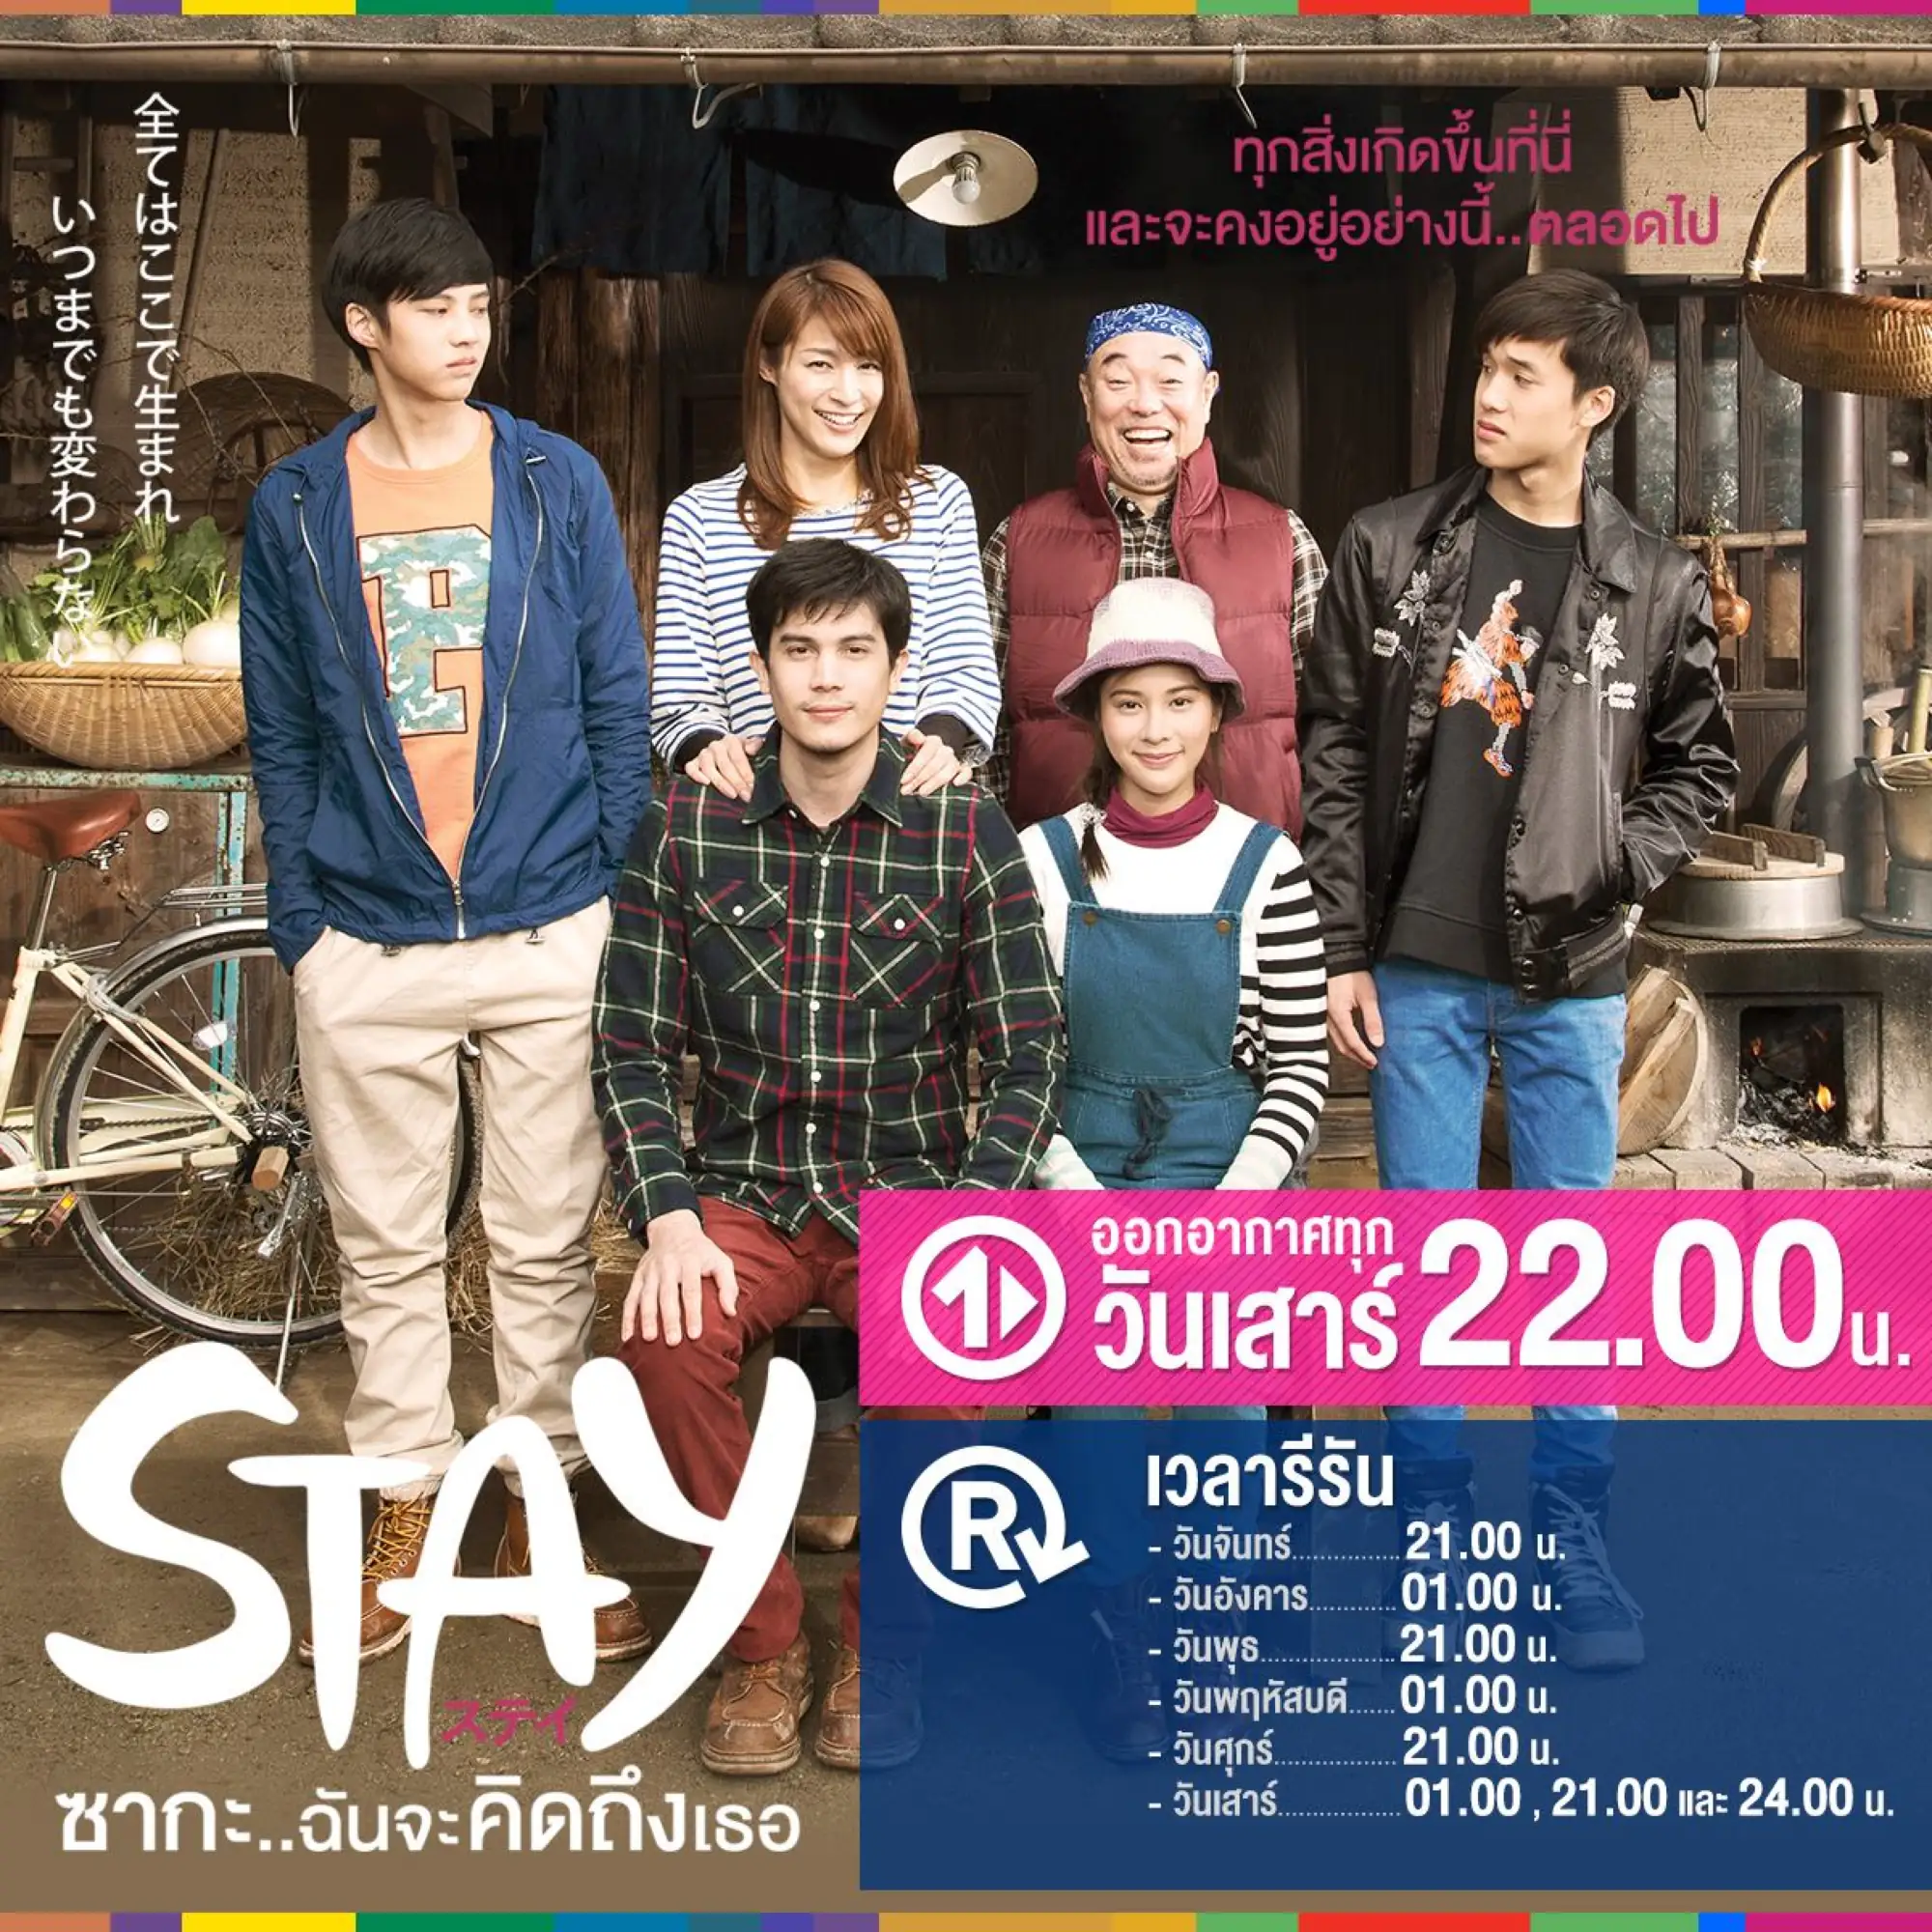 泰劇《STAY Zaka...我會想你的》海報(圖片來源:臉書專頁@STAY ซากะ..ฉันจะคิดถึงเธอ)